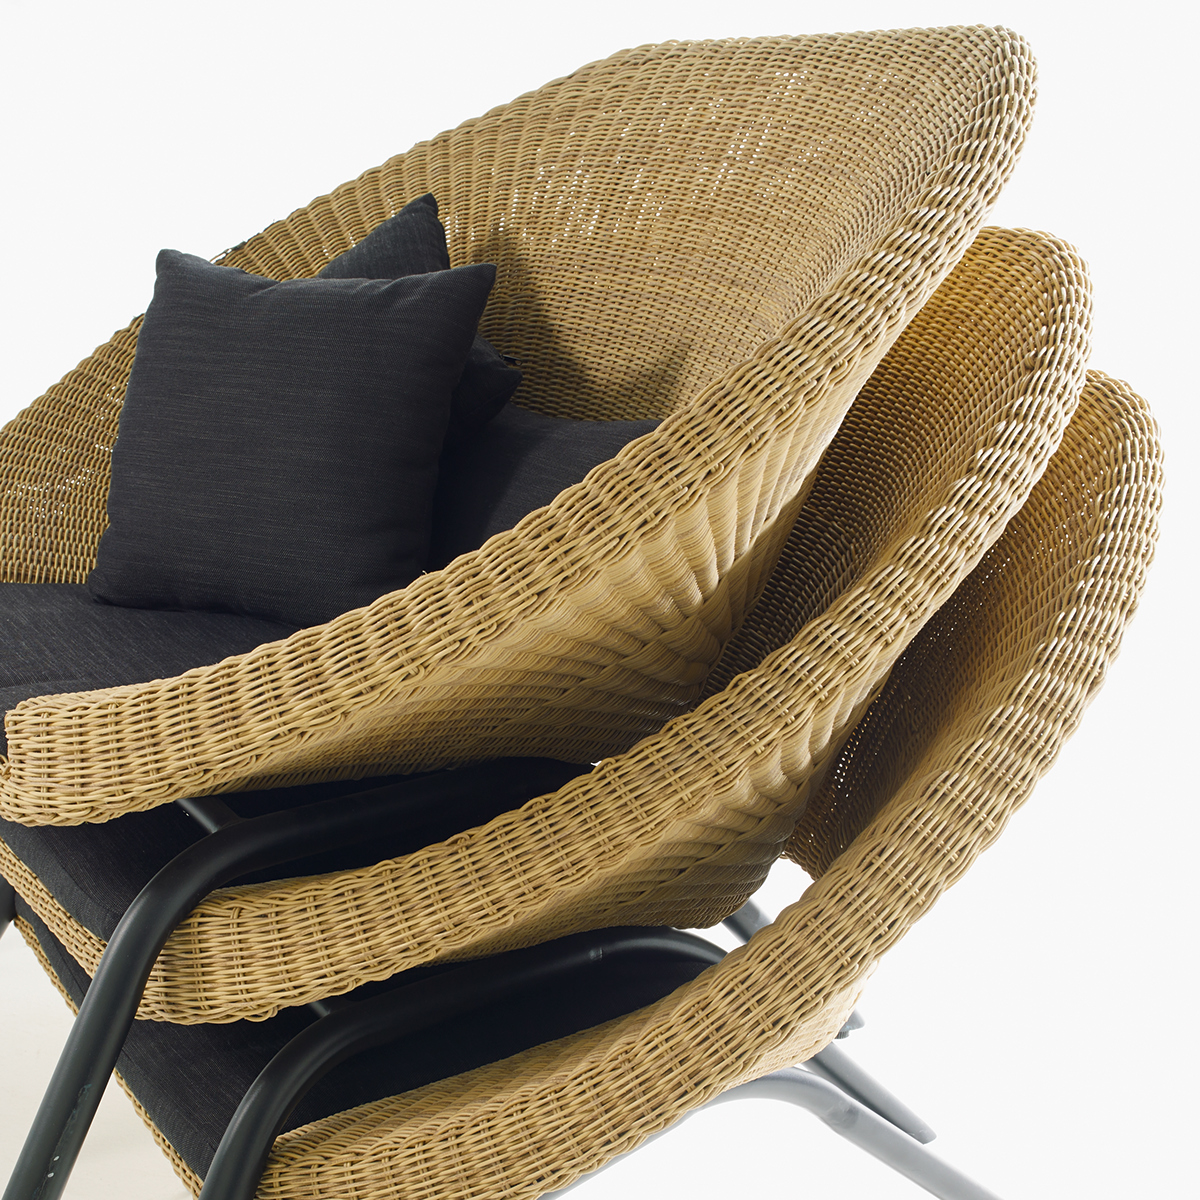 让你在家瘫的有情调的竹编沙发设计